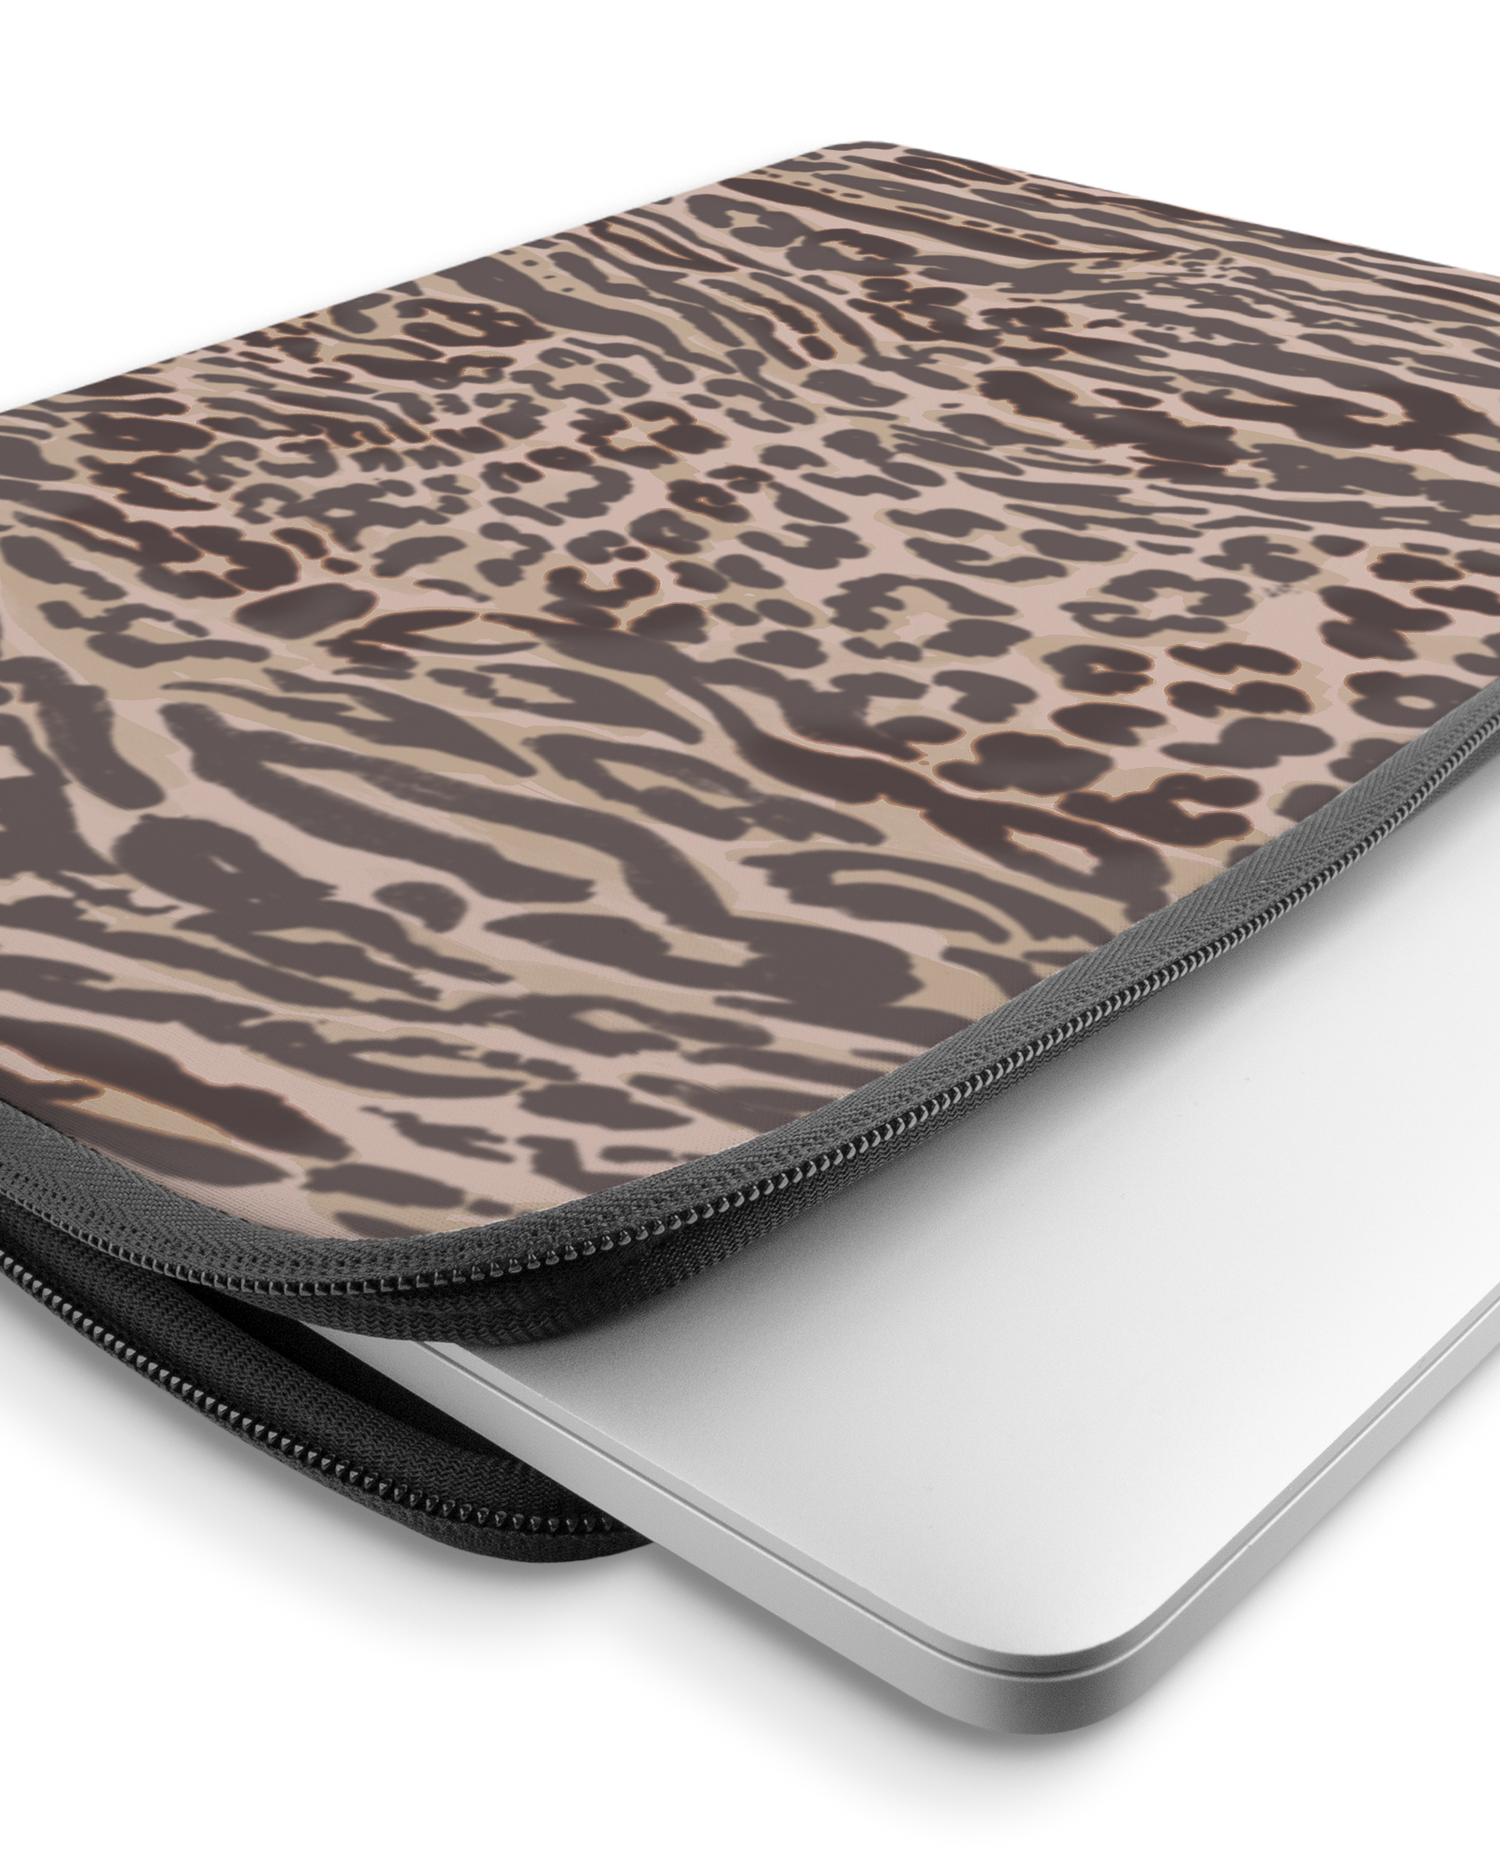 Animal Skin Tough Love Laptophülle 15-16 Zoll mit Gerät im Inneren